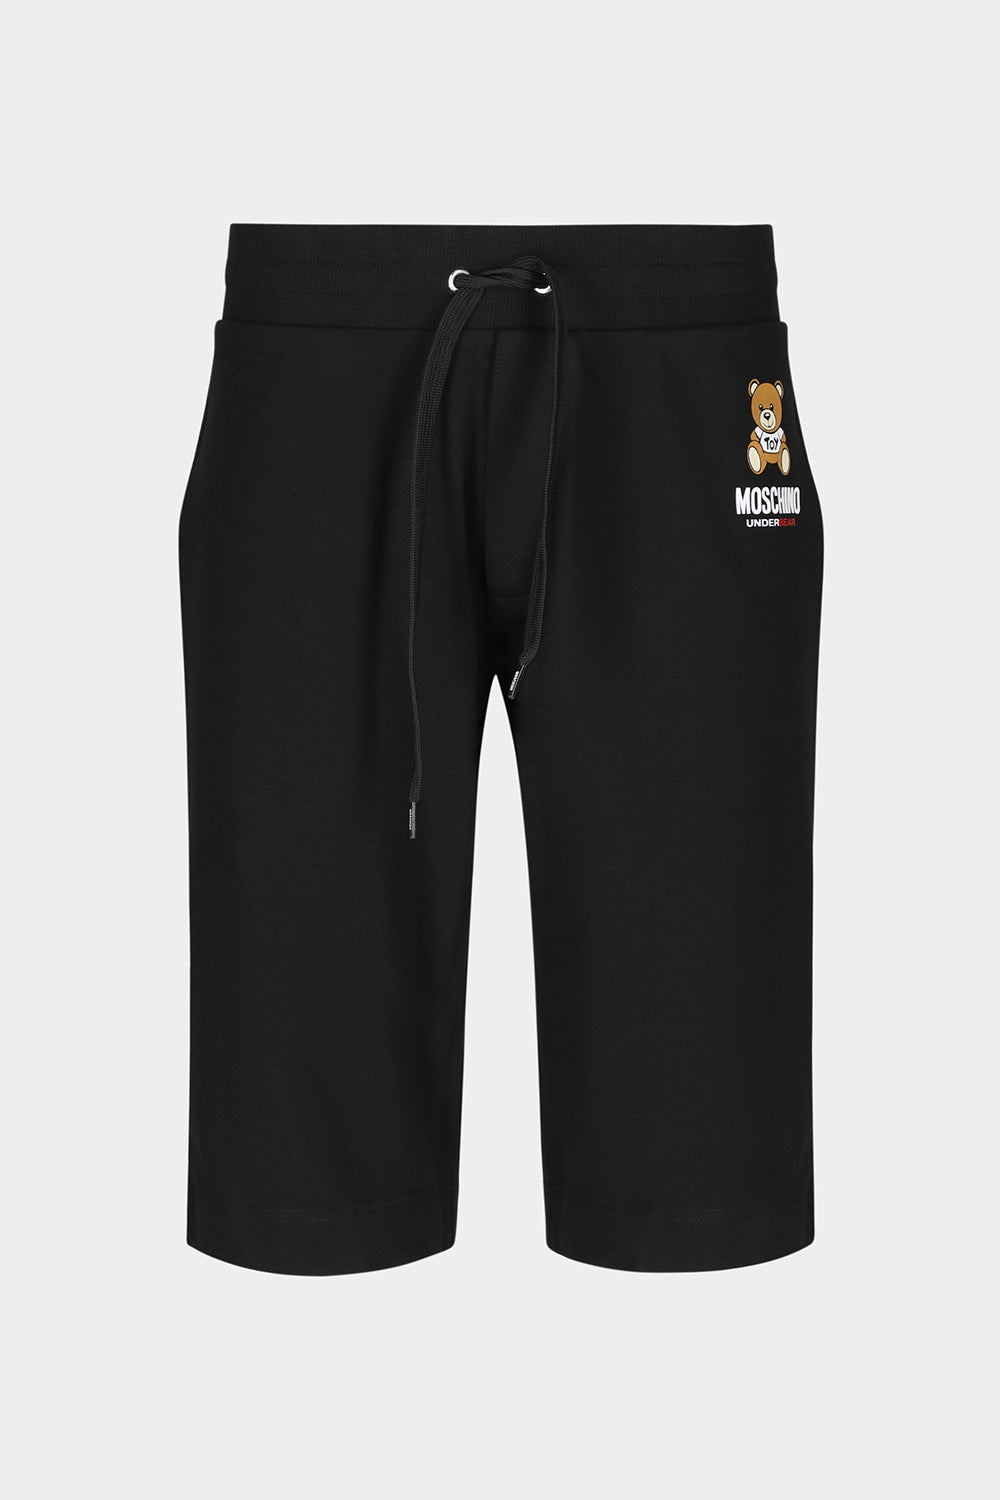 מכנסי ברמודה לגברים לוגו דובי MOSCHINO Vendome online | ונדום .